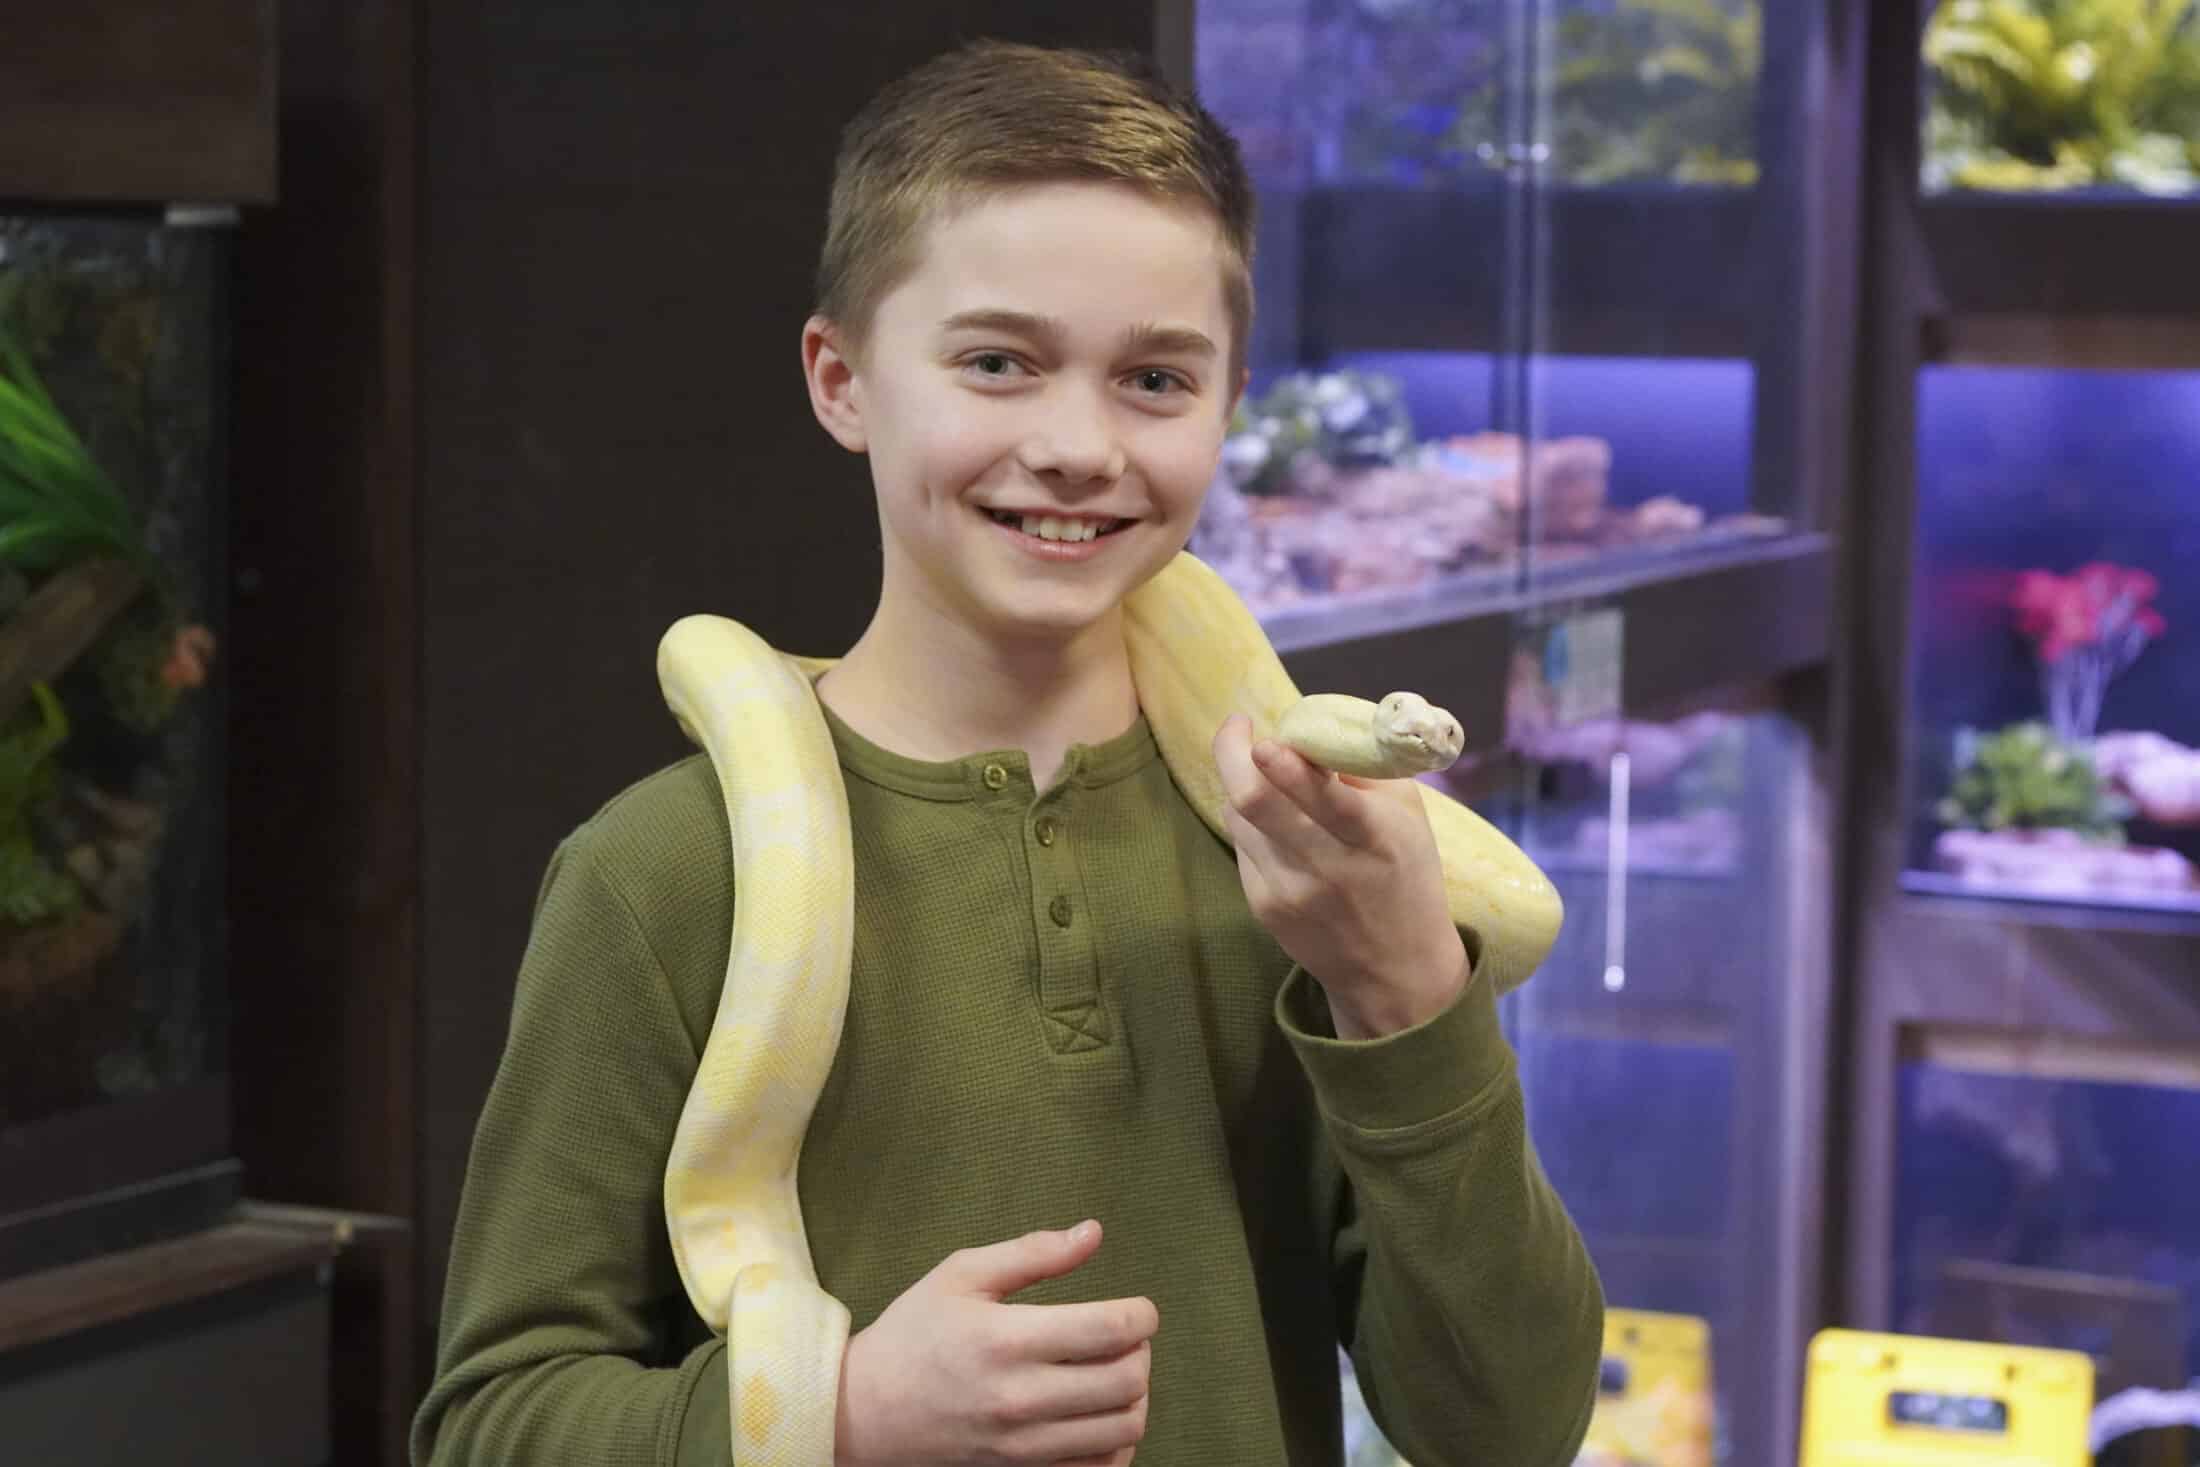 large snake holding